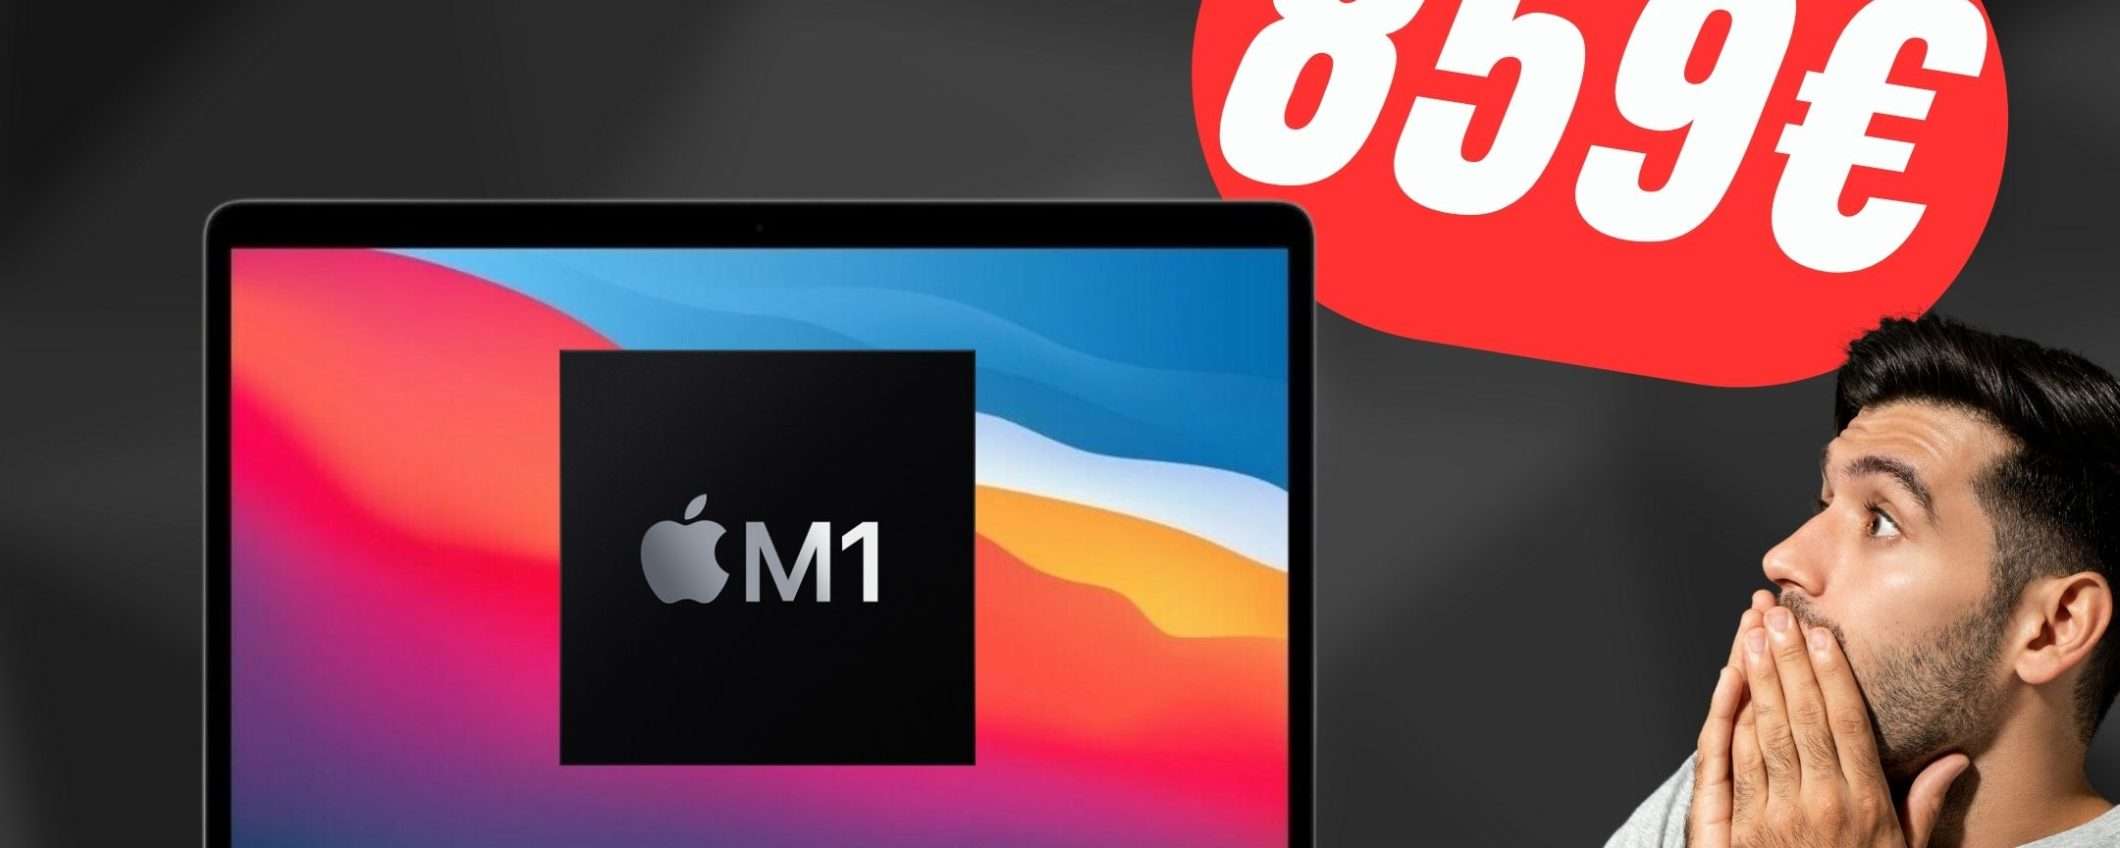 Apple MacBook Air con Chip M1 a soli 859€ su eBay!